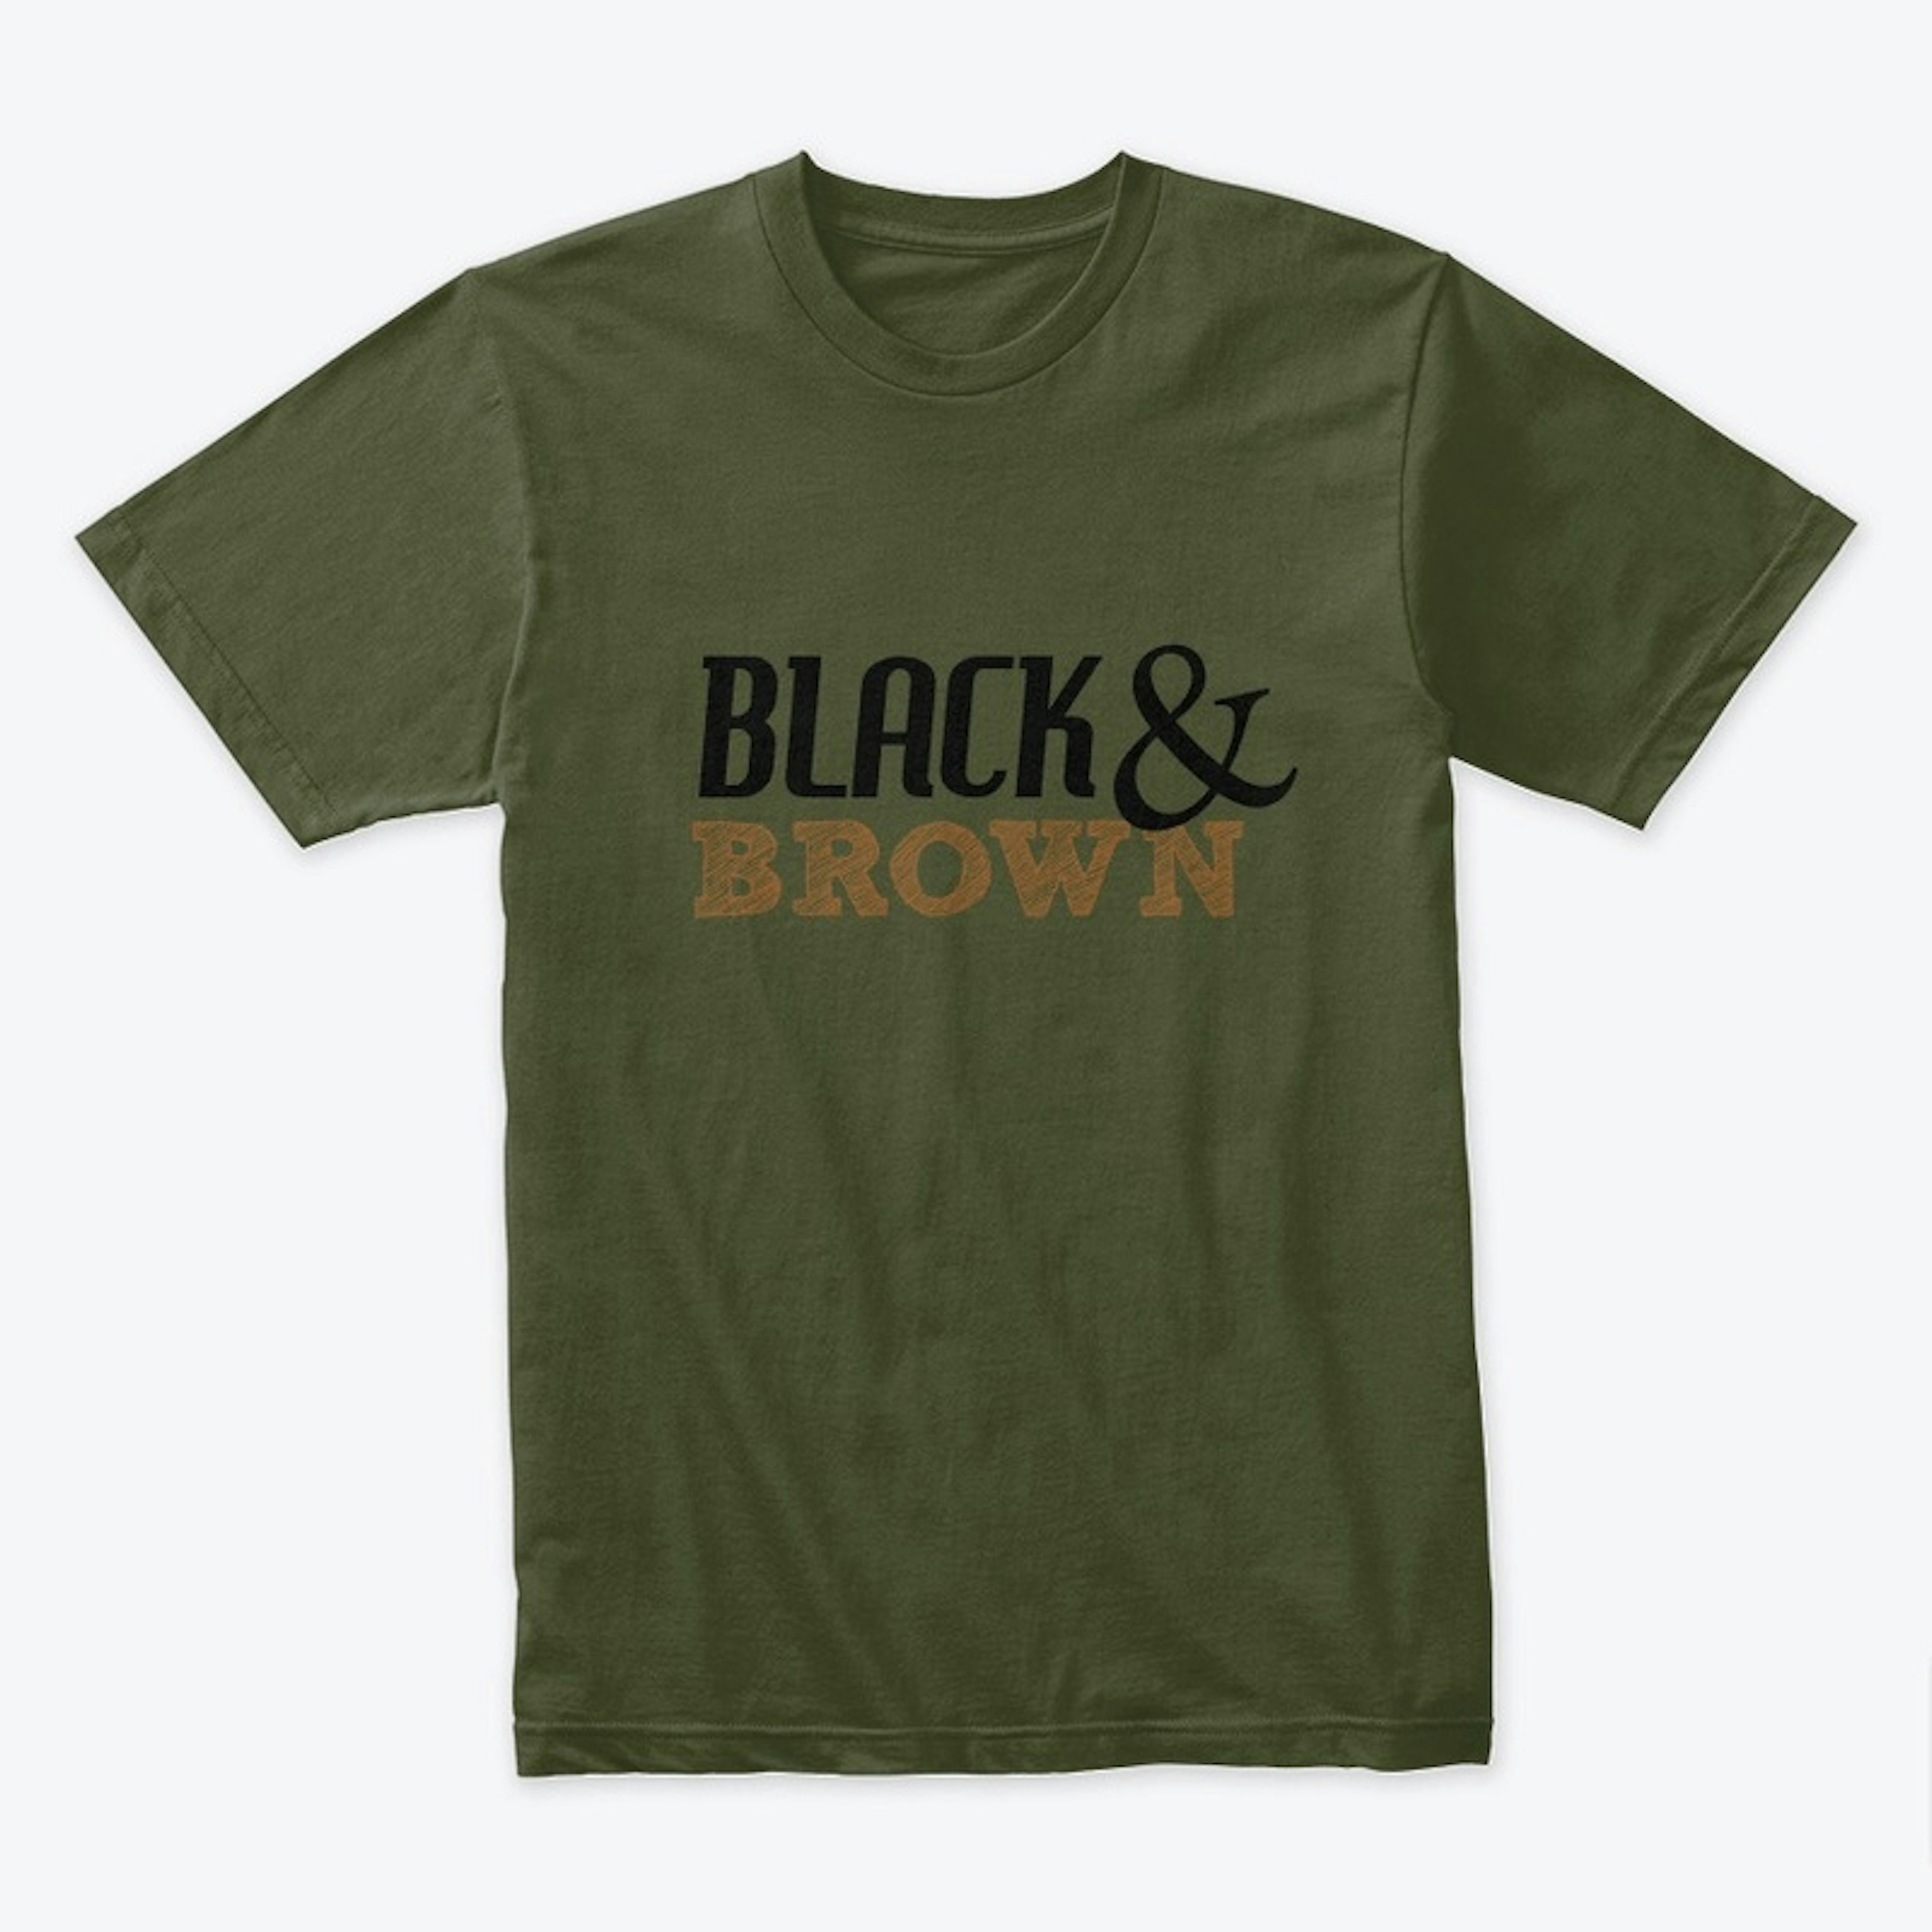 BLACK & BROWN